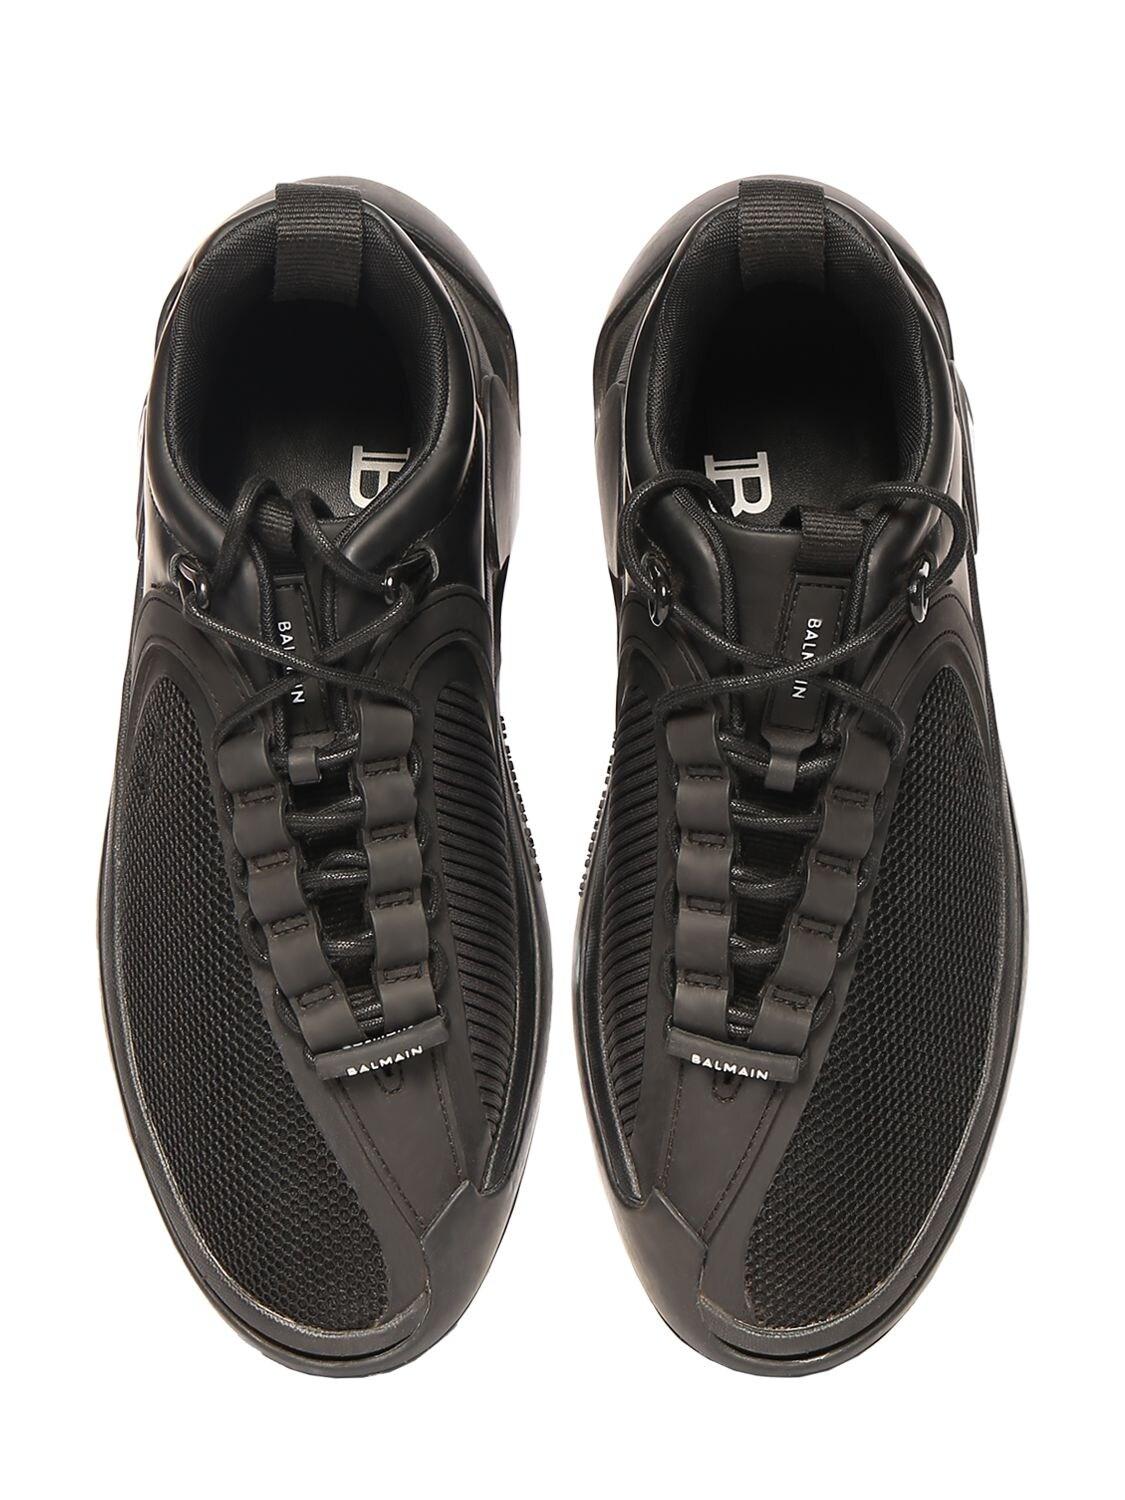 Balmain B Runner Leather & Mesh Low Top Sneakers in Black for Men 